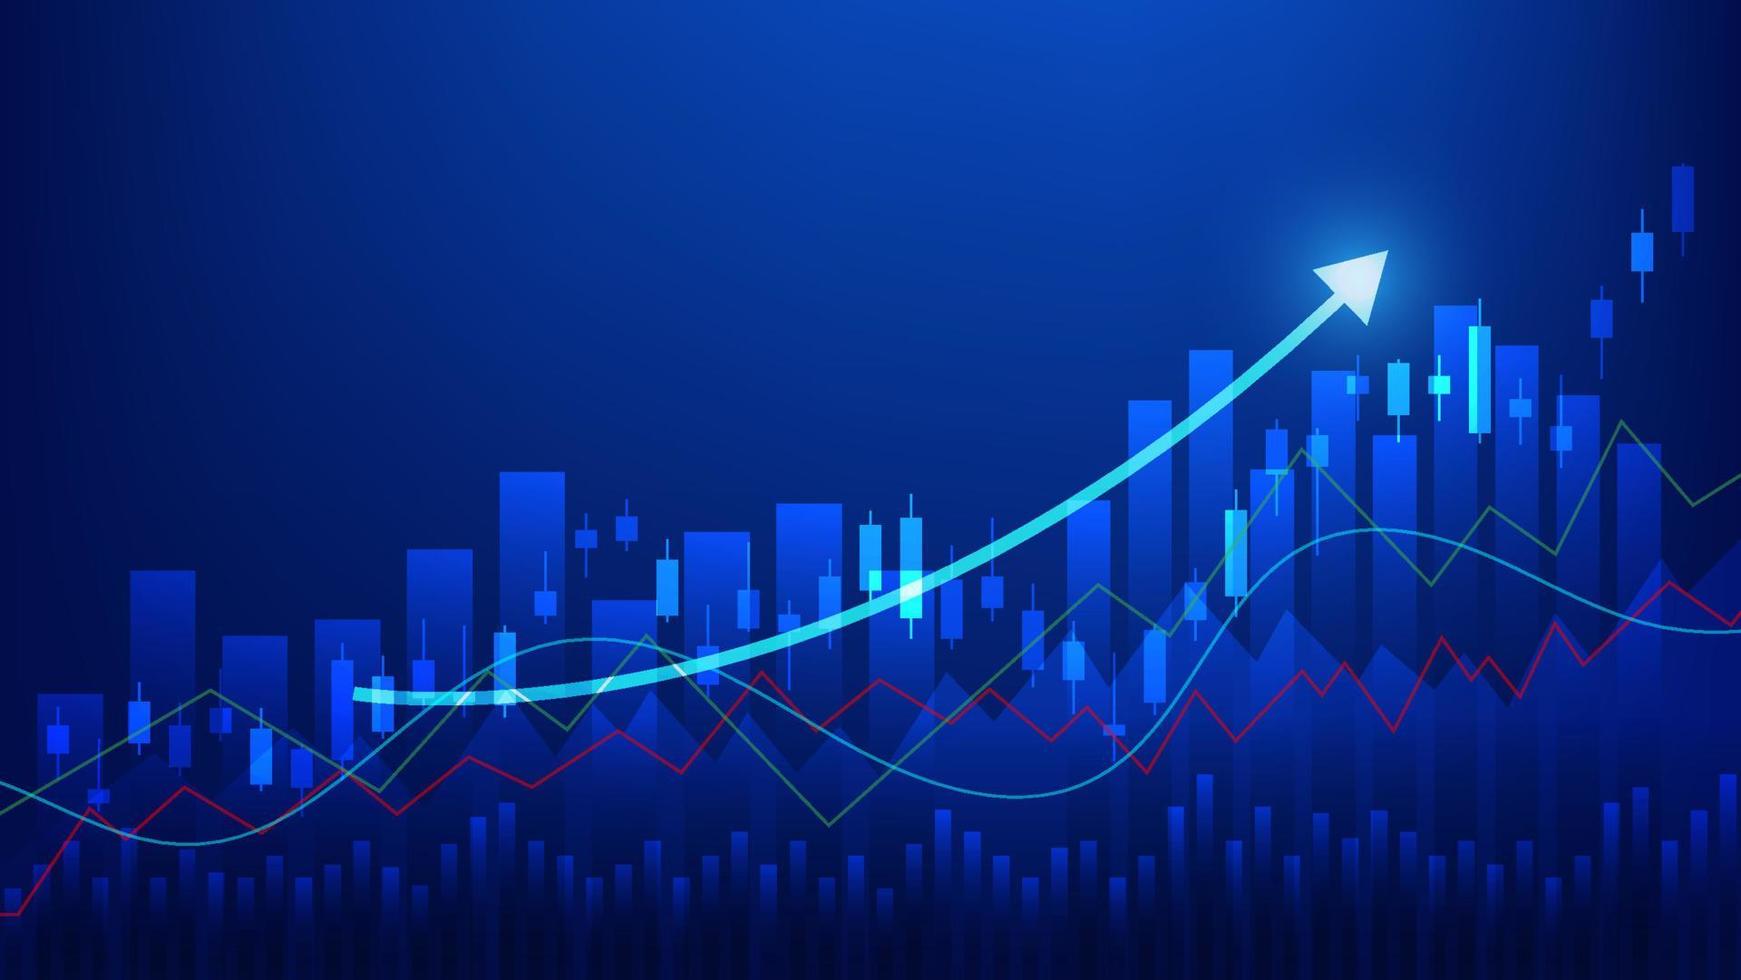 concepto de economía y finanzas. estadísticas de negocios financieros candelabros y gráfico de barras del mercado de valores vector